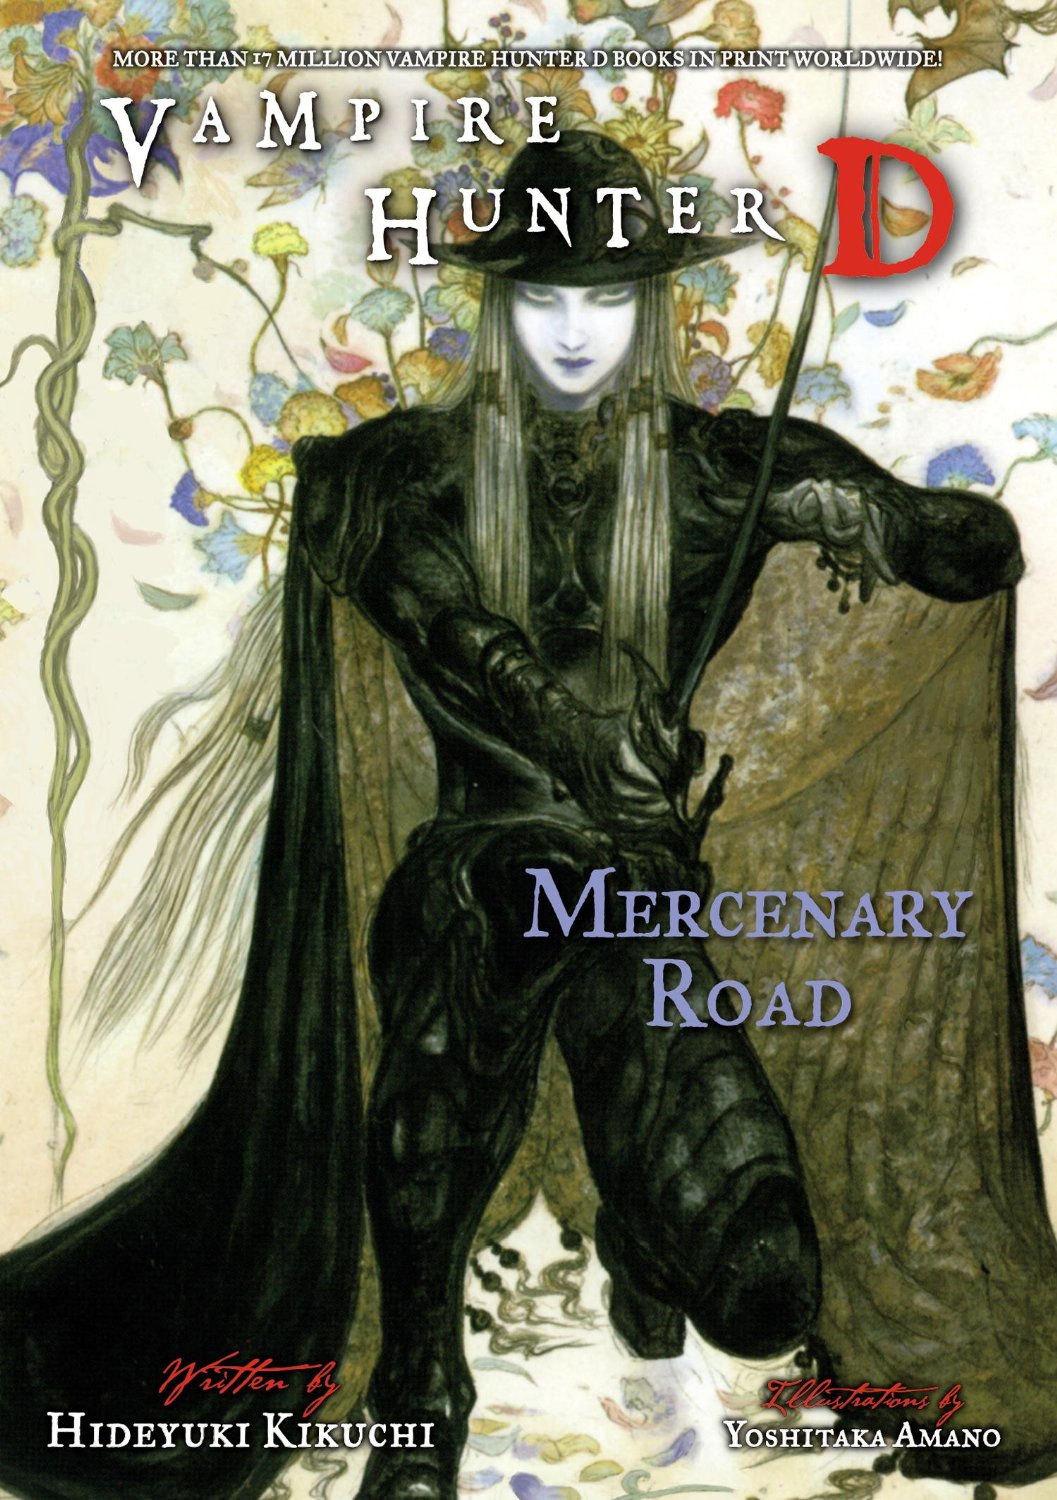 Mercenary Road by Hideyuki Kikuchi